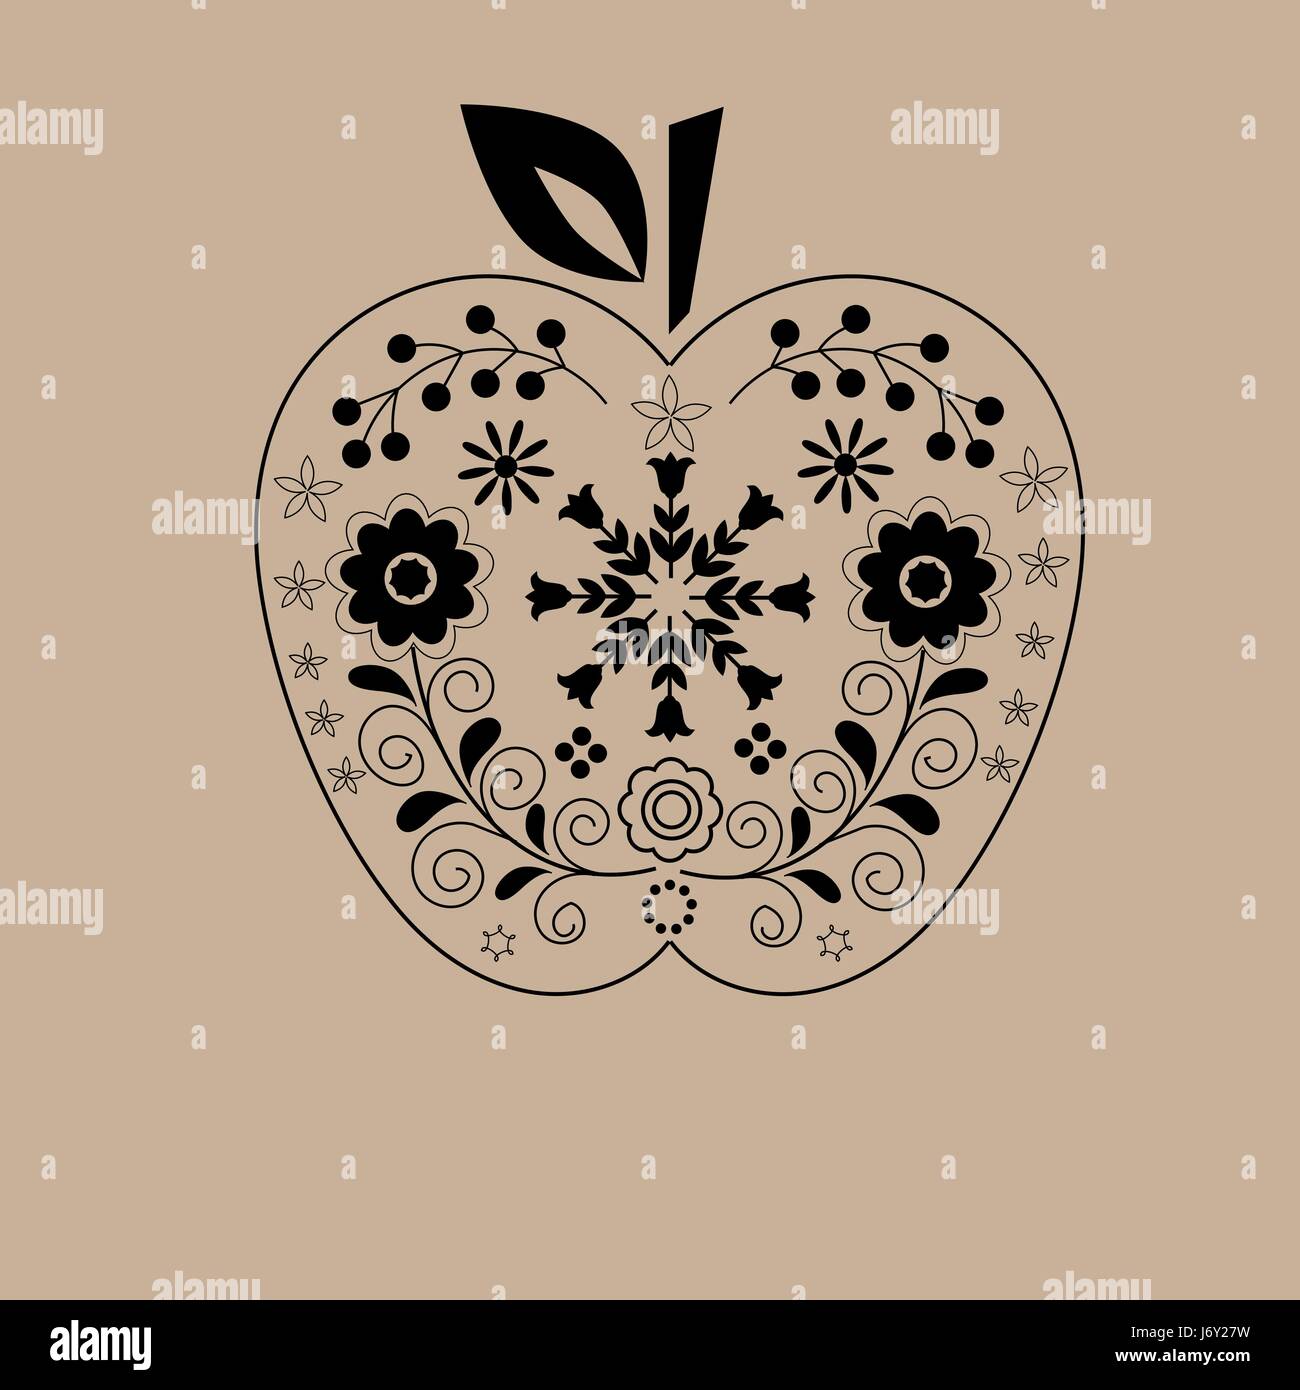 Apple dessiné à la main dentelle noir ornement floral fond beige printable, home décoration d'intérieur, modèle de carte de vœux, surface pattern design Illustration de Vecteur